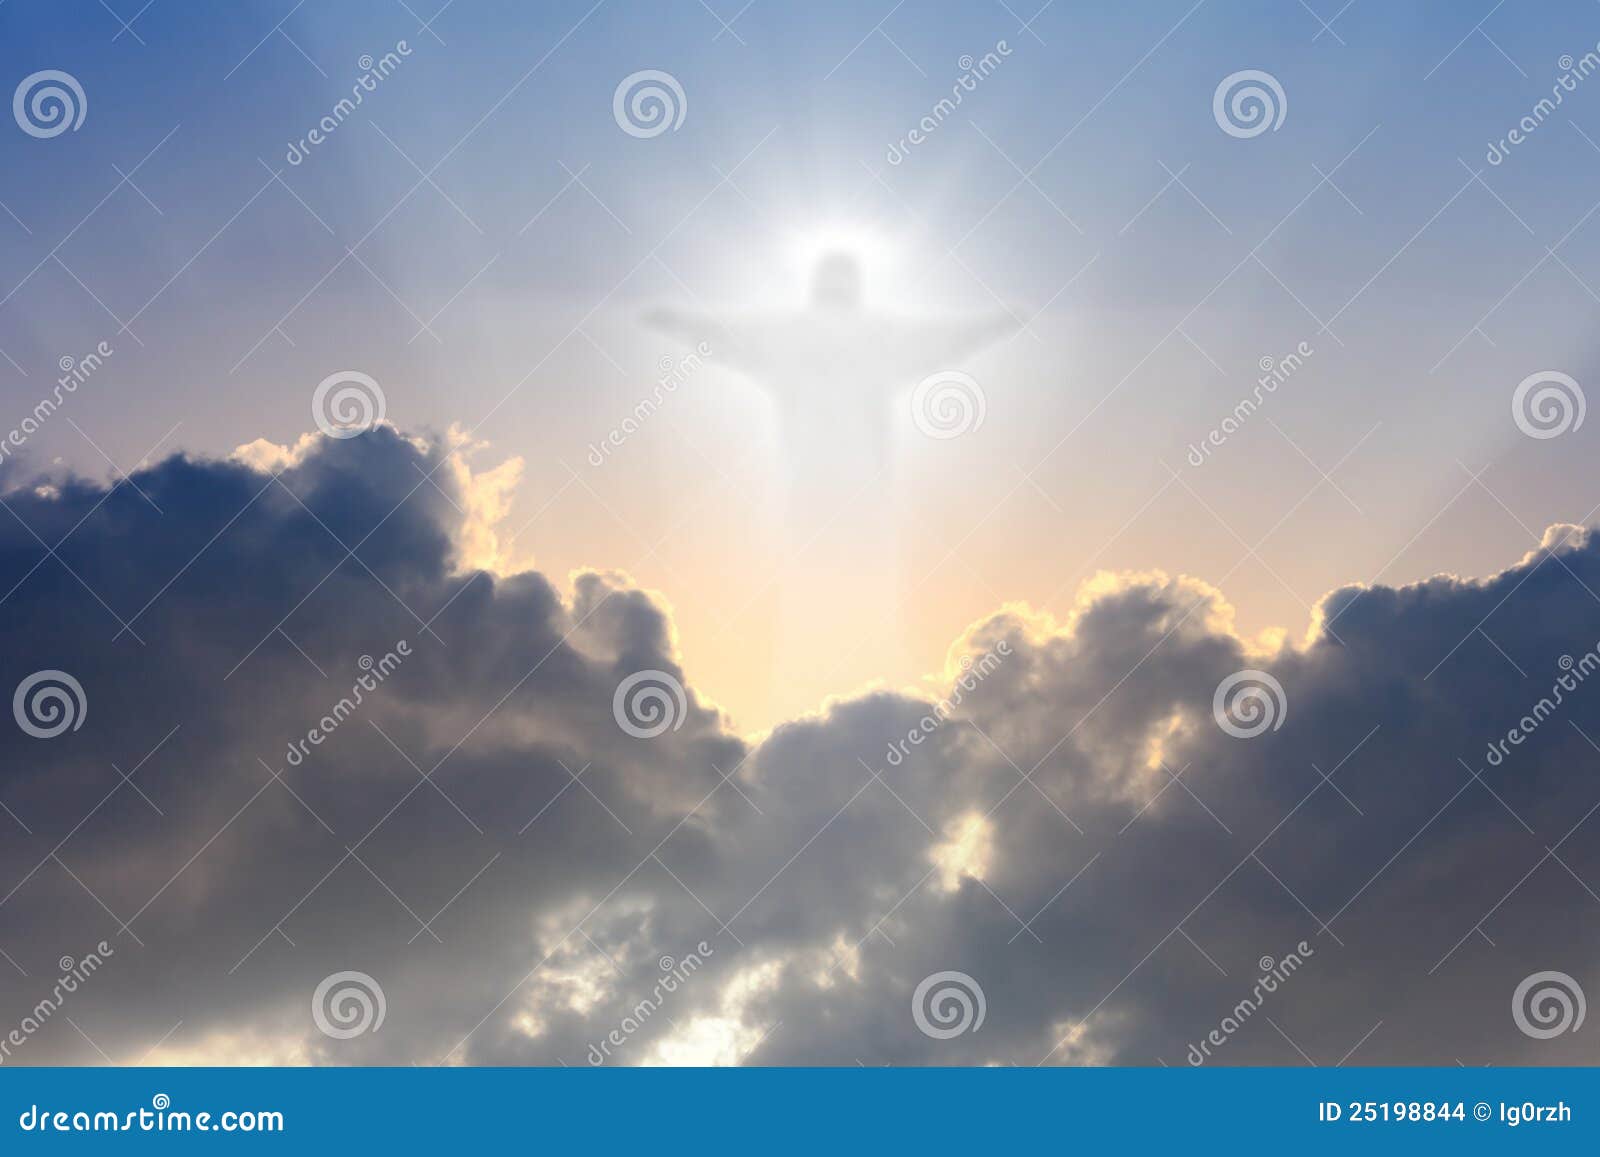 christ in sky